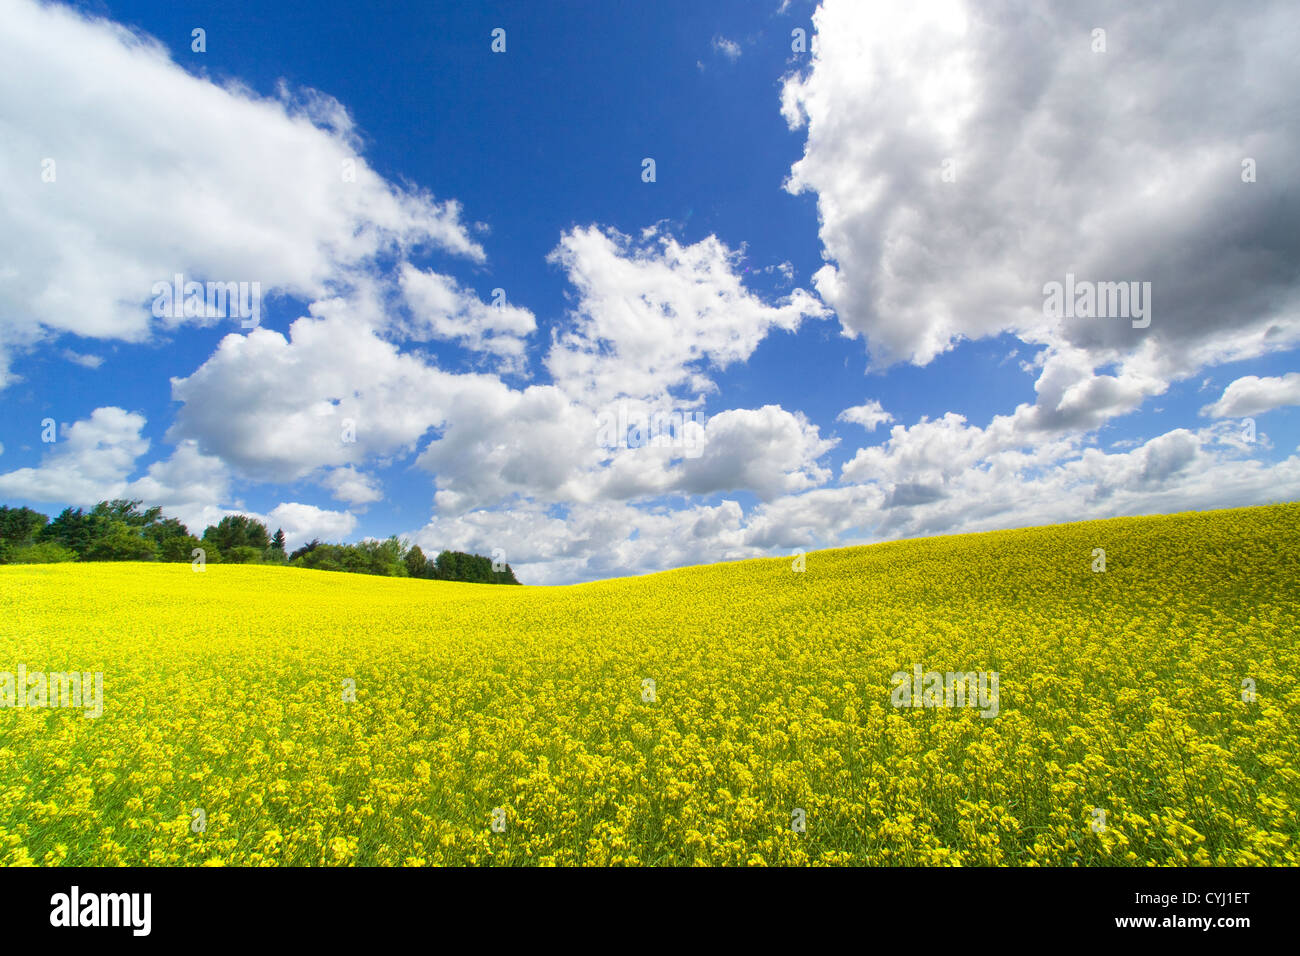 Champ jaune, blanc nuages gonflés, et ciel bleu. Stouffville, Ontario, Canada Banque D'Images